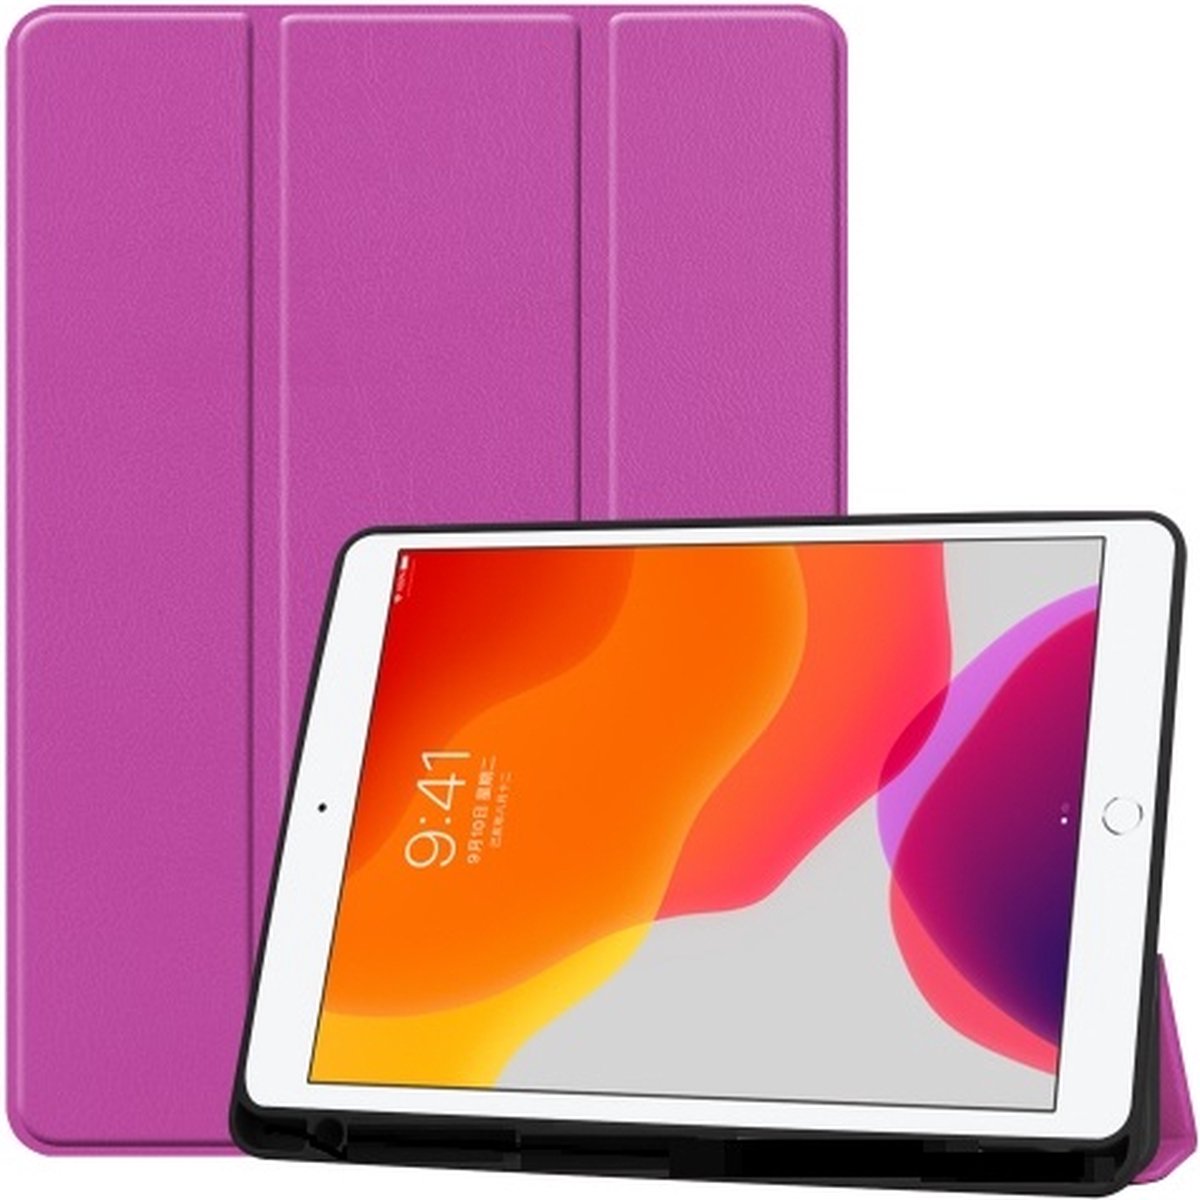 Apple iPad 2/3/4 magnetische Wallet case /flipcase stand/ hardcover achterzijde/ smart cover kleur Paars